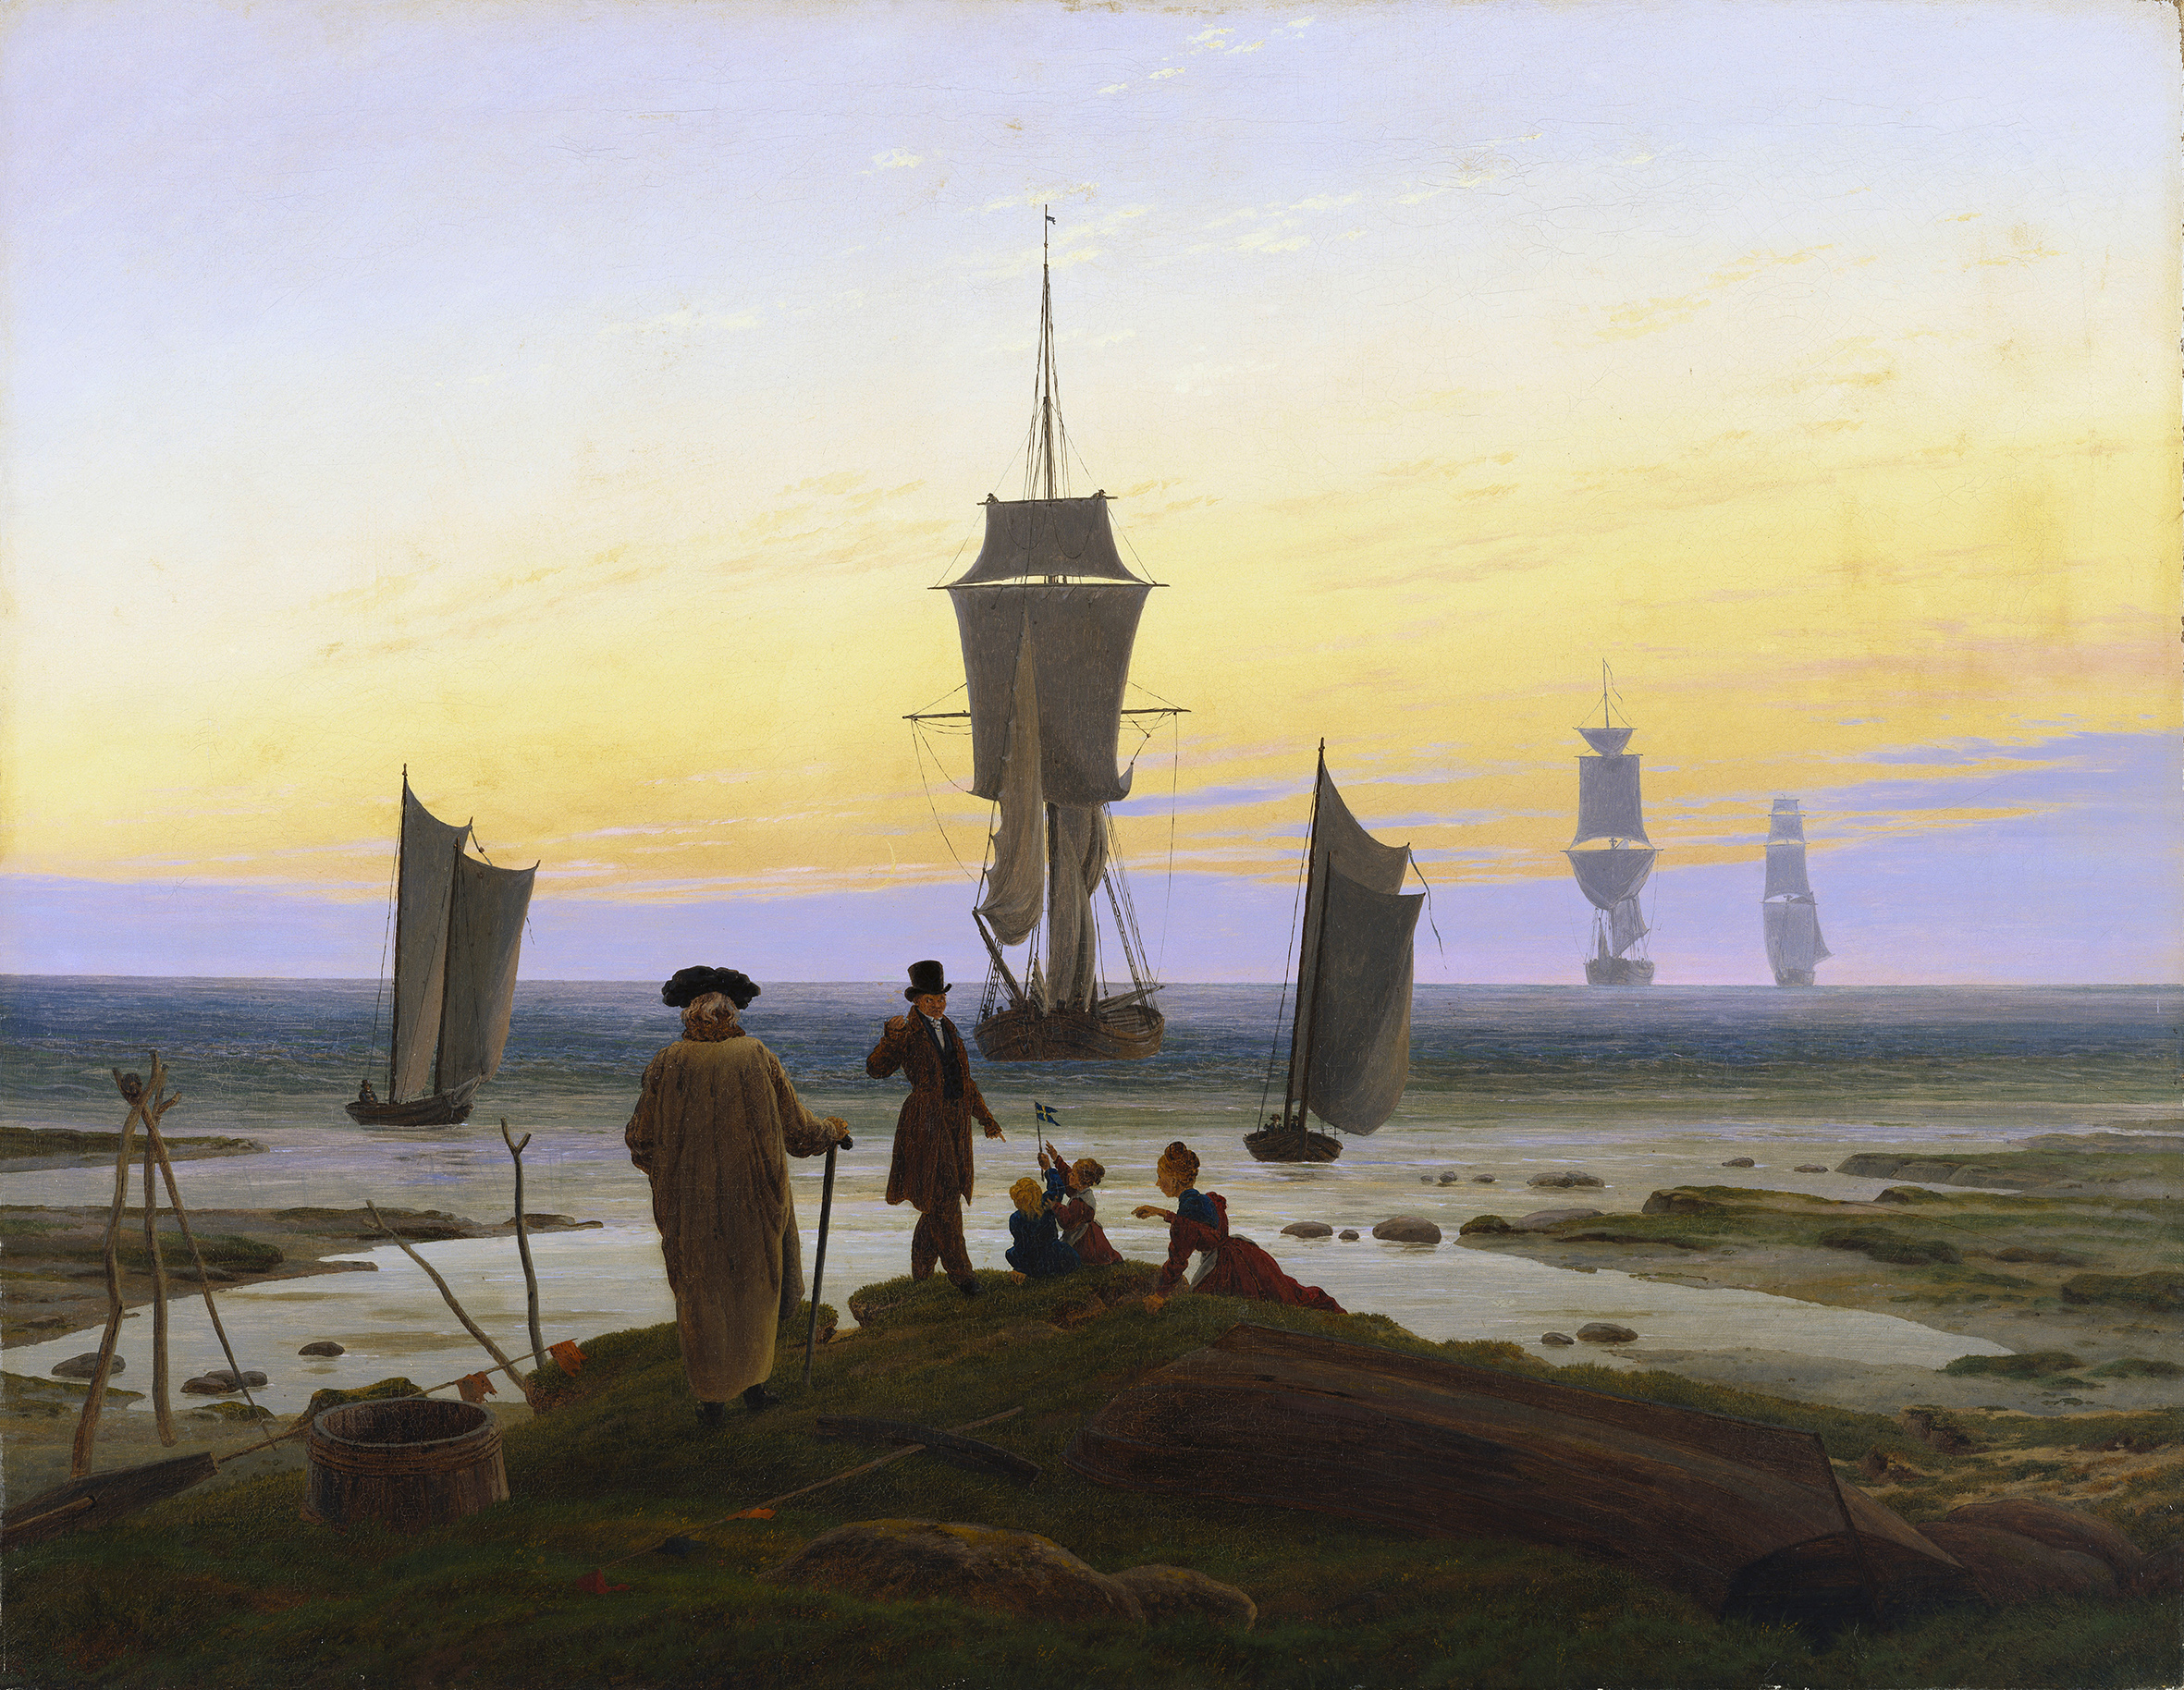 The Stages of Life by Caspar David Friedrich - 1835 - 72.5 cm × 94 cm Museum der bildenden Künste